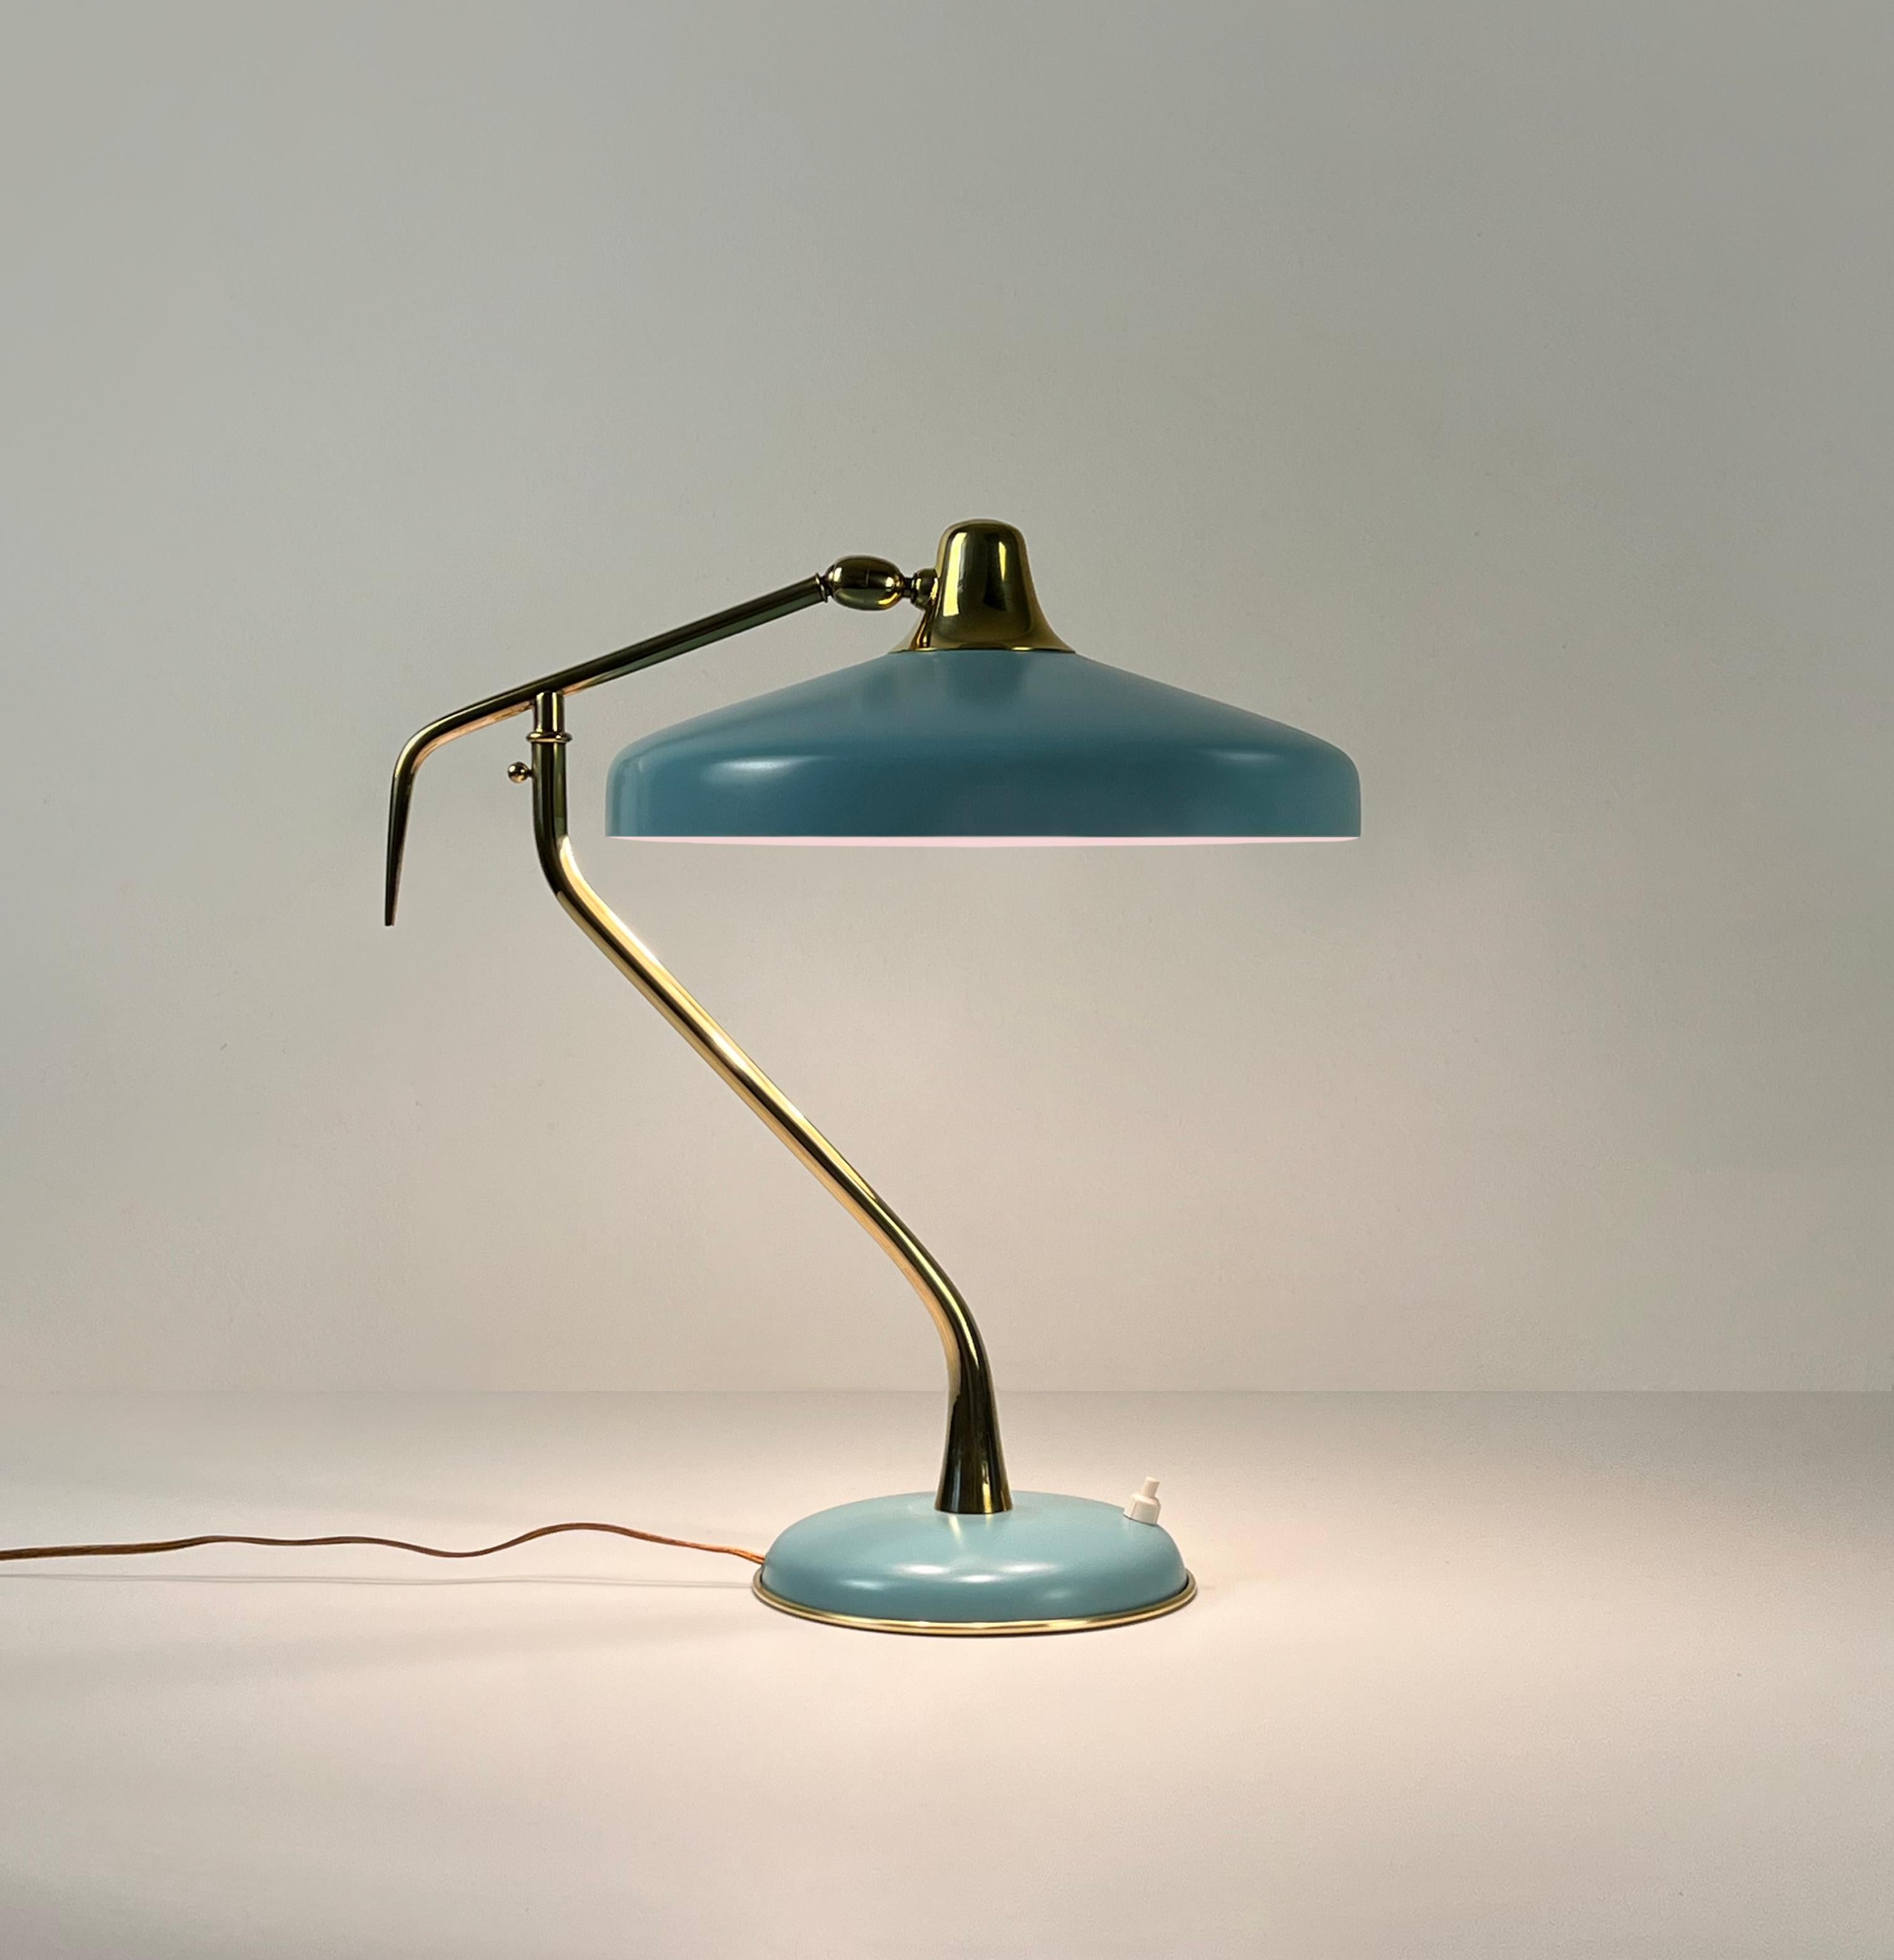 Lampe de table modèle 331 conçue par Oscar Torlasco pour Lumi Milano, Italie, années 1950

La lampe de bureau modèle 331 d'Oscar Torlasco, fabriquée par l'entreprise milanaise de luminaires LUMI, présente un design italien intemporel utilisant des